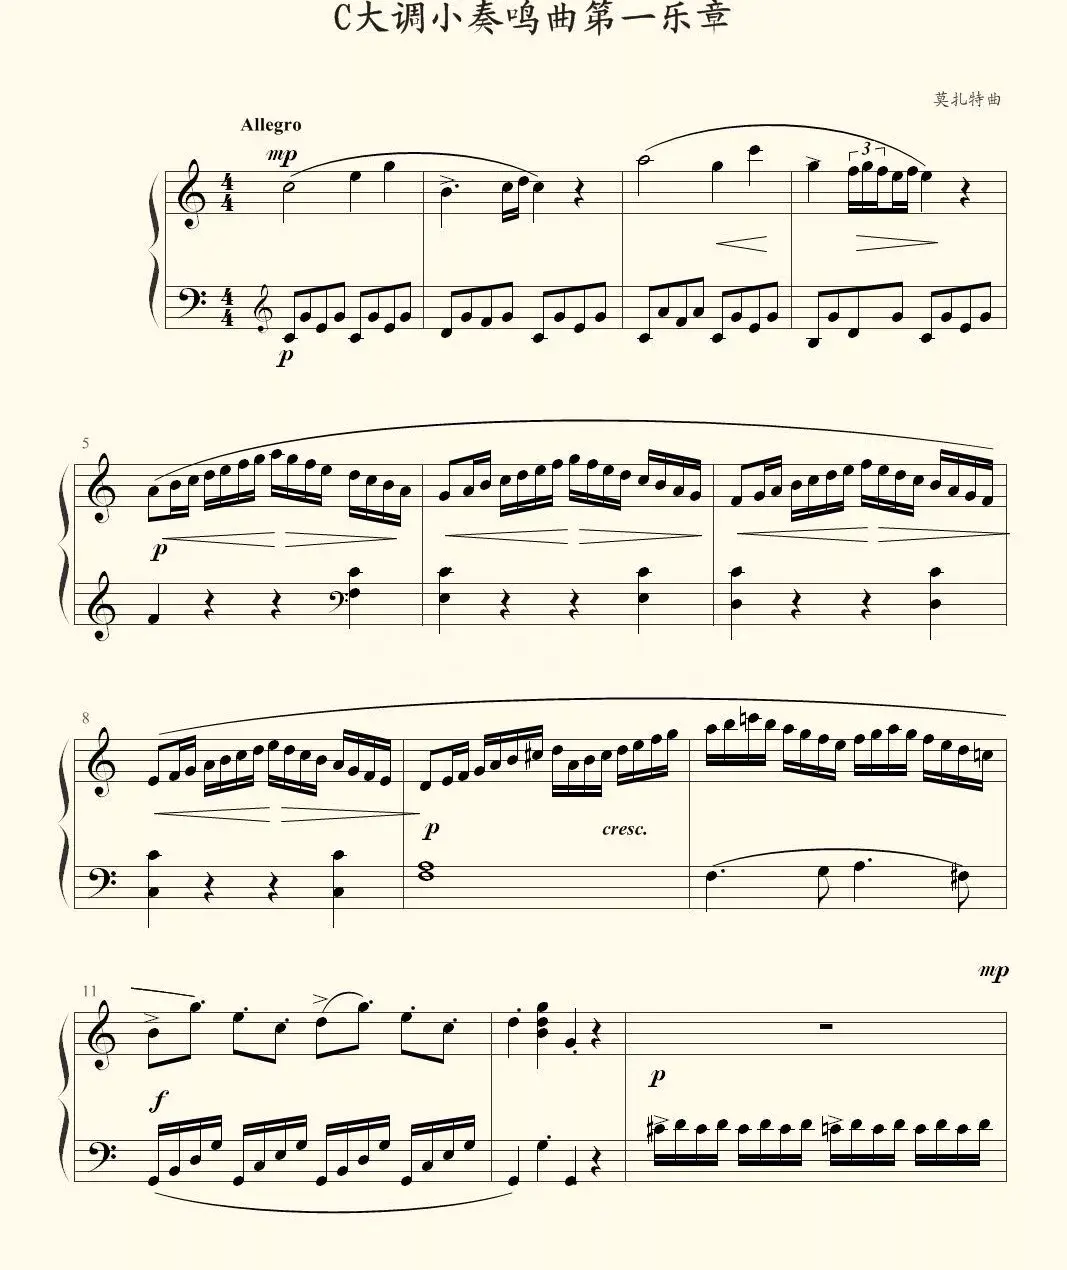 教材介绍到了6级水平左右,就可以练习莫扎特海顿等人的奏鸣曲了,常用